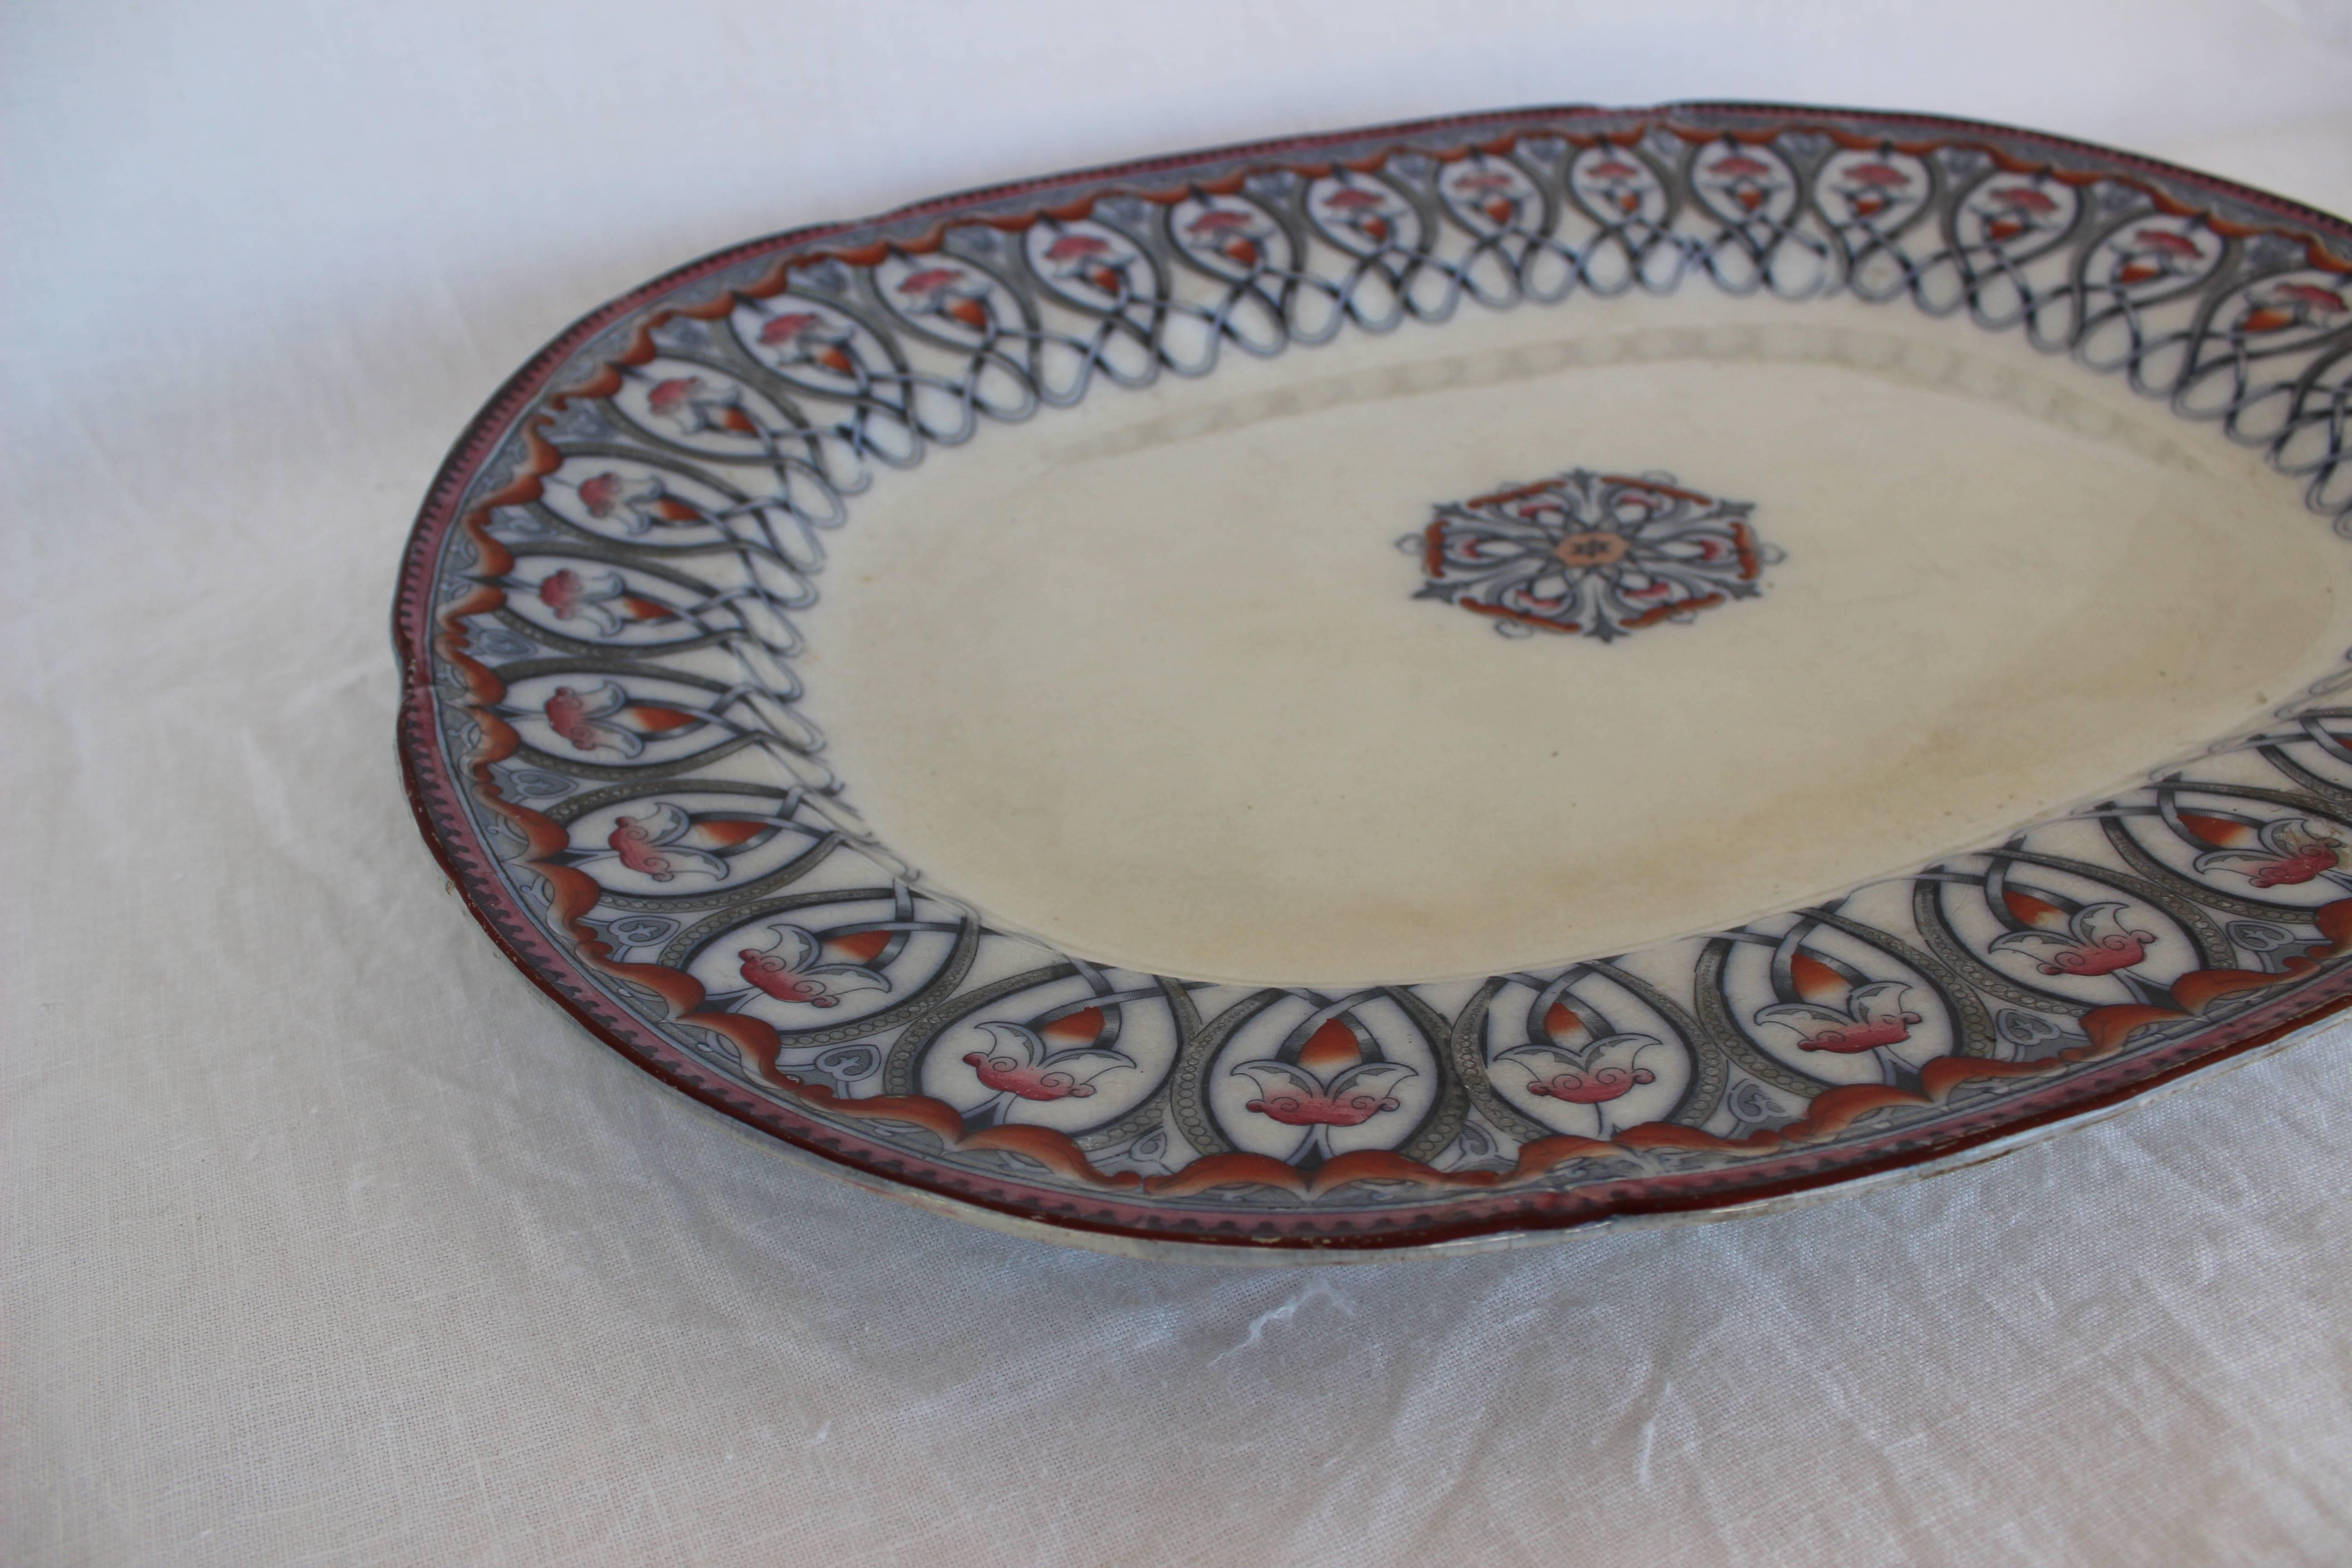 Großer Teller mit arabischem Muster aus englischem Staffordshire.